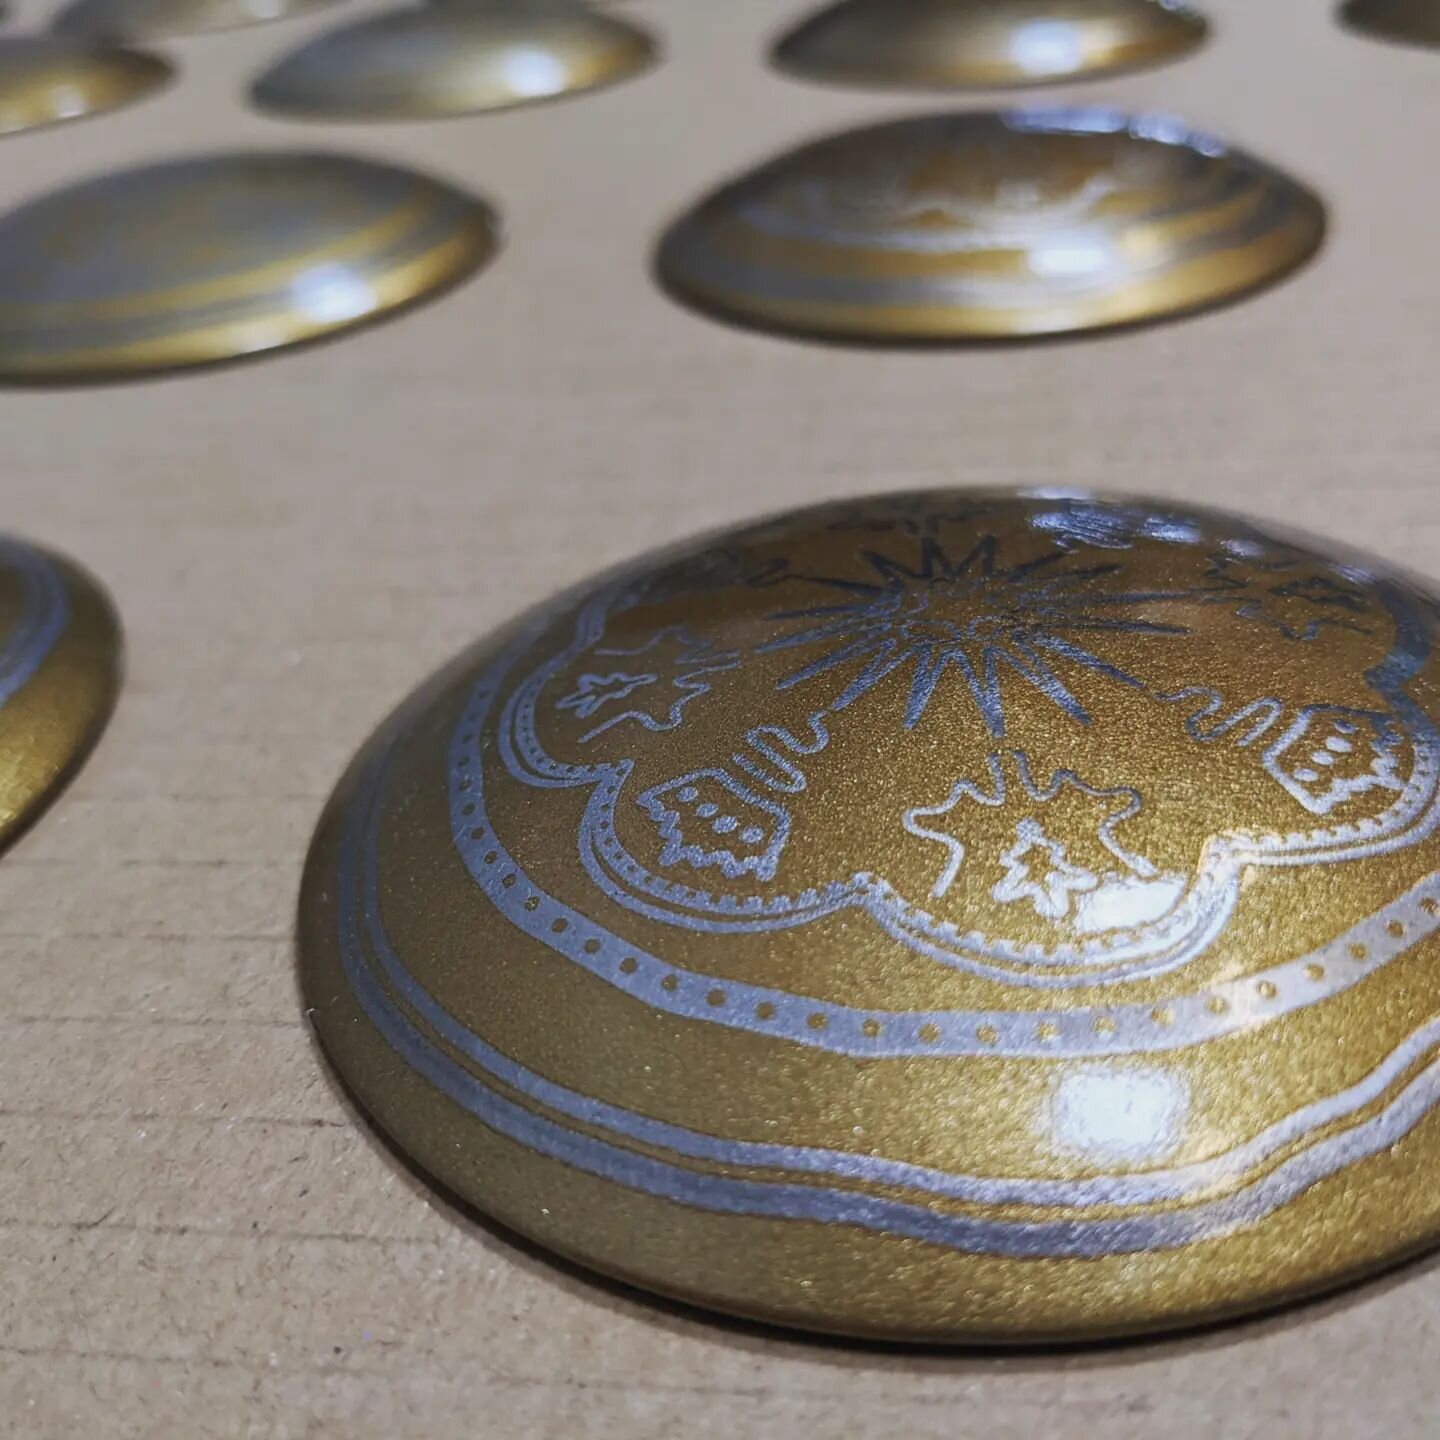 Road studs in the shape of the iconic rosenobel coins produced for @helsingorkommune